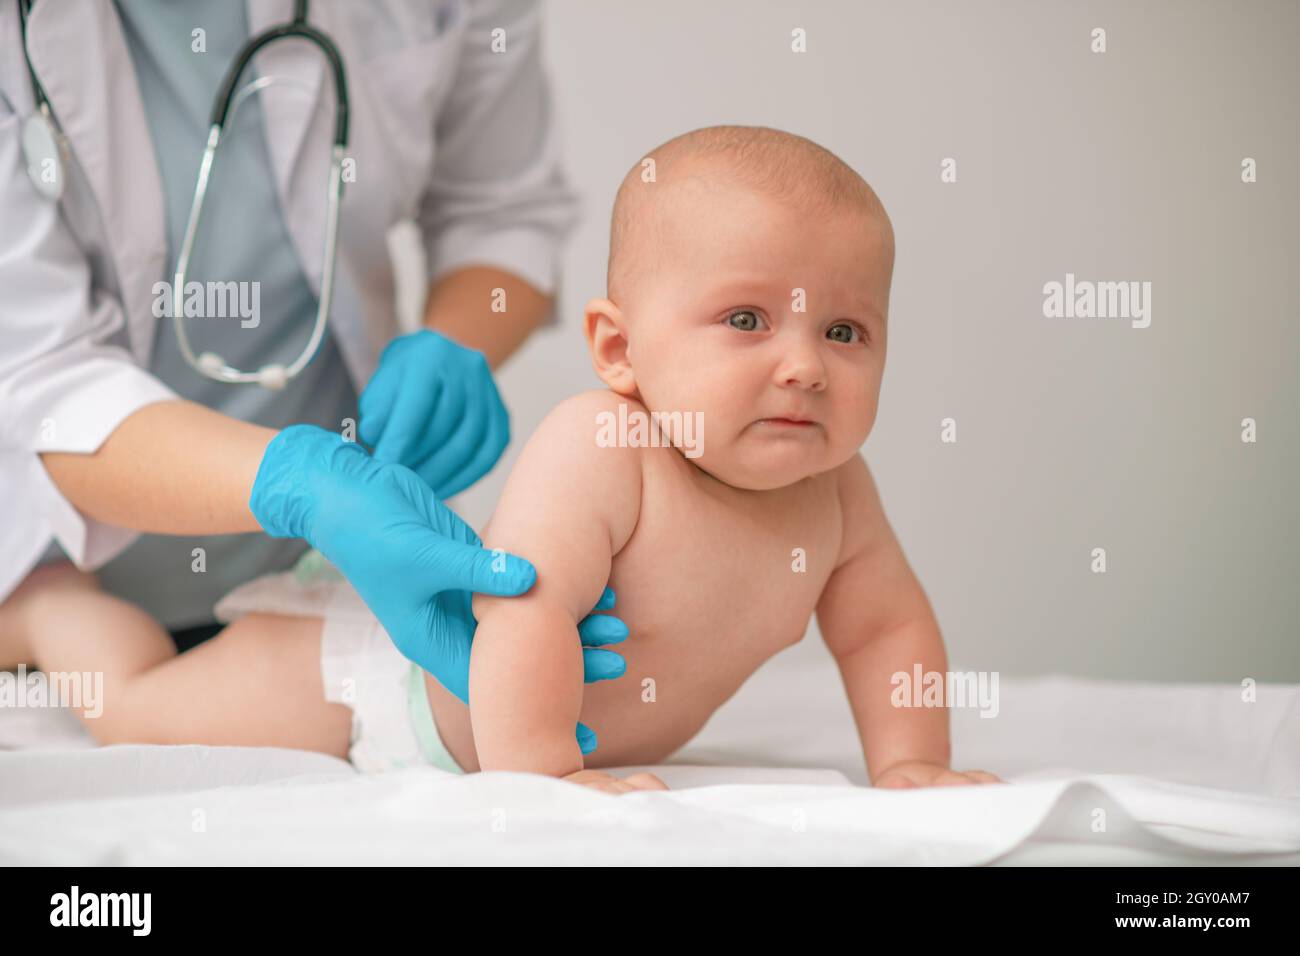 Bebé Asustado Es Examinado Por Un Profesional Sanitario Imagen de